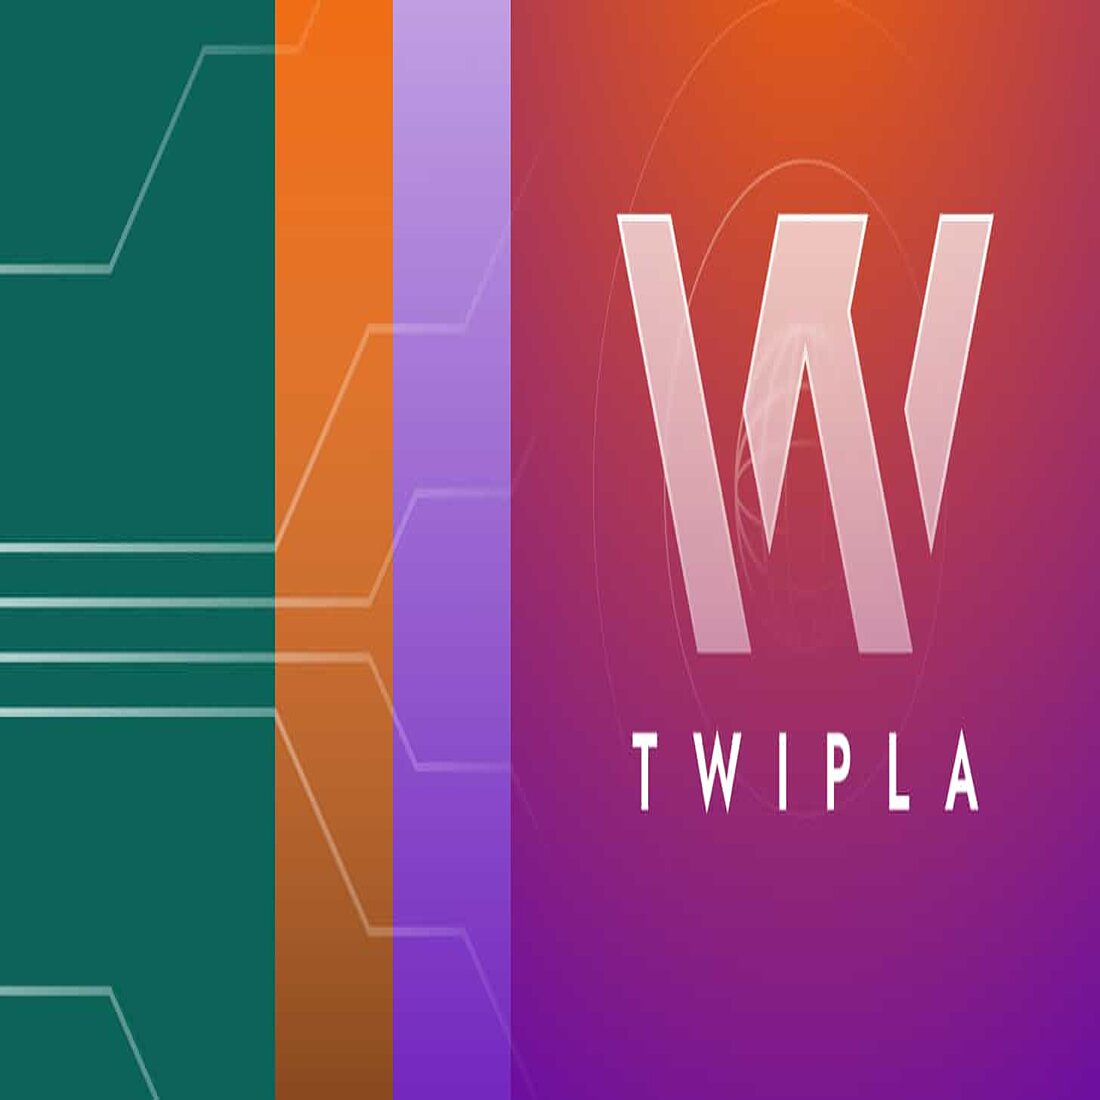 Website Intelligence News - TWIPLA - Umfirmierung